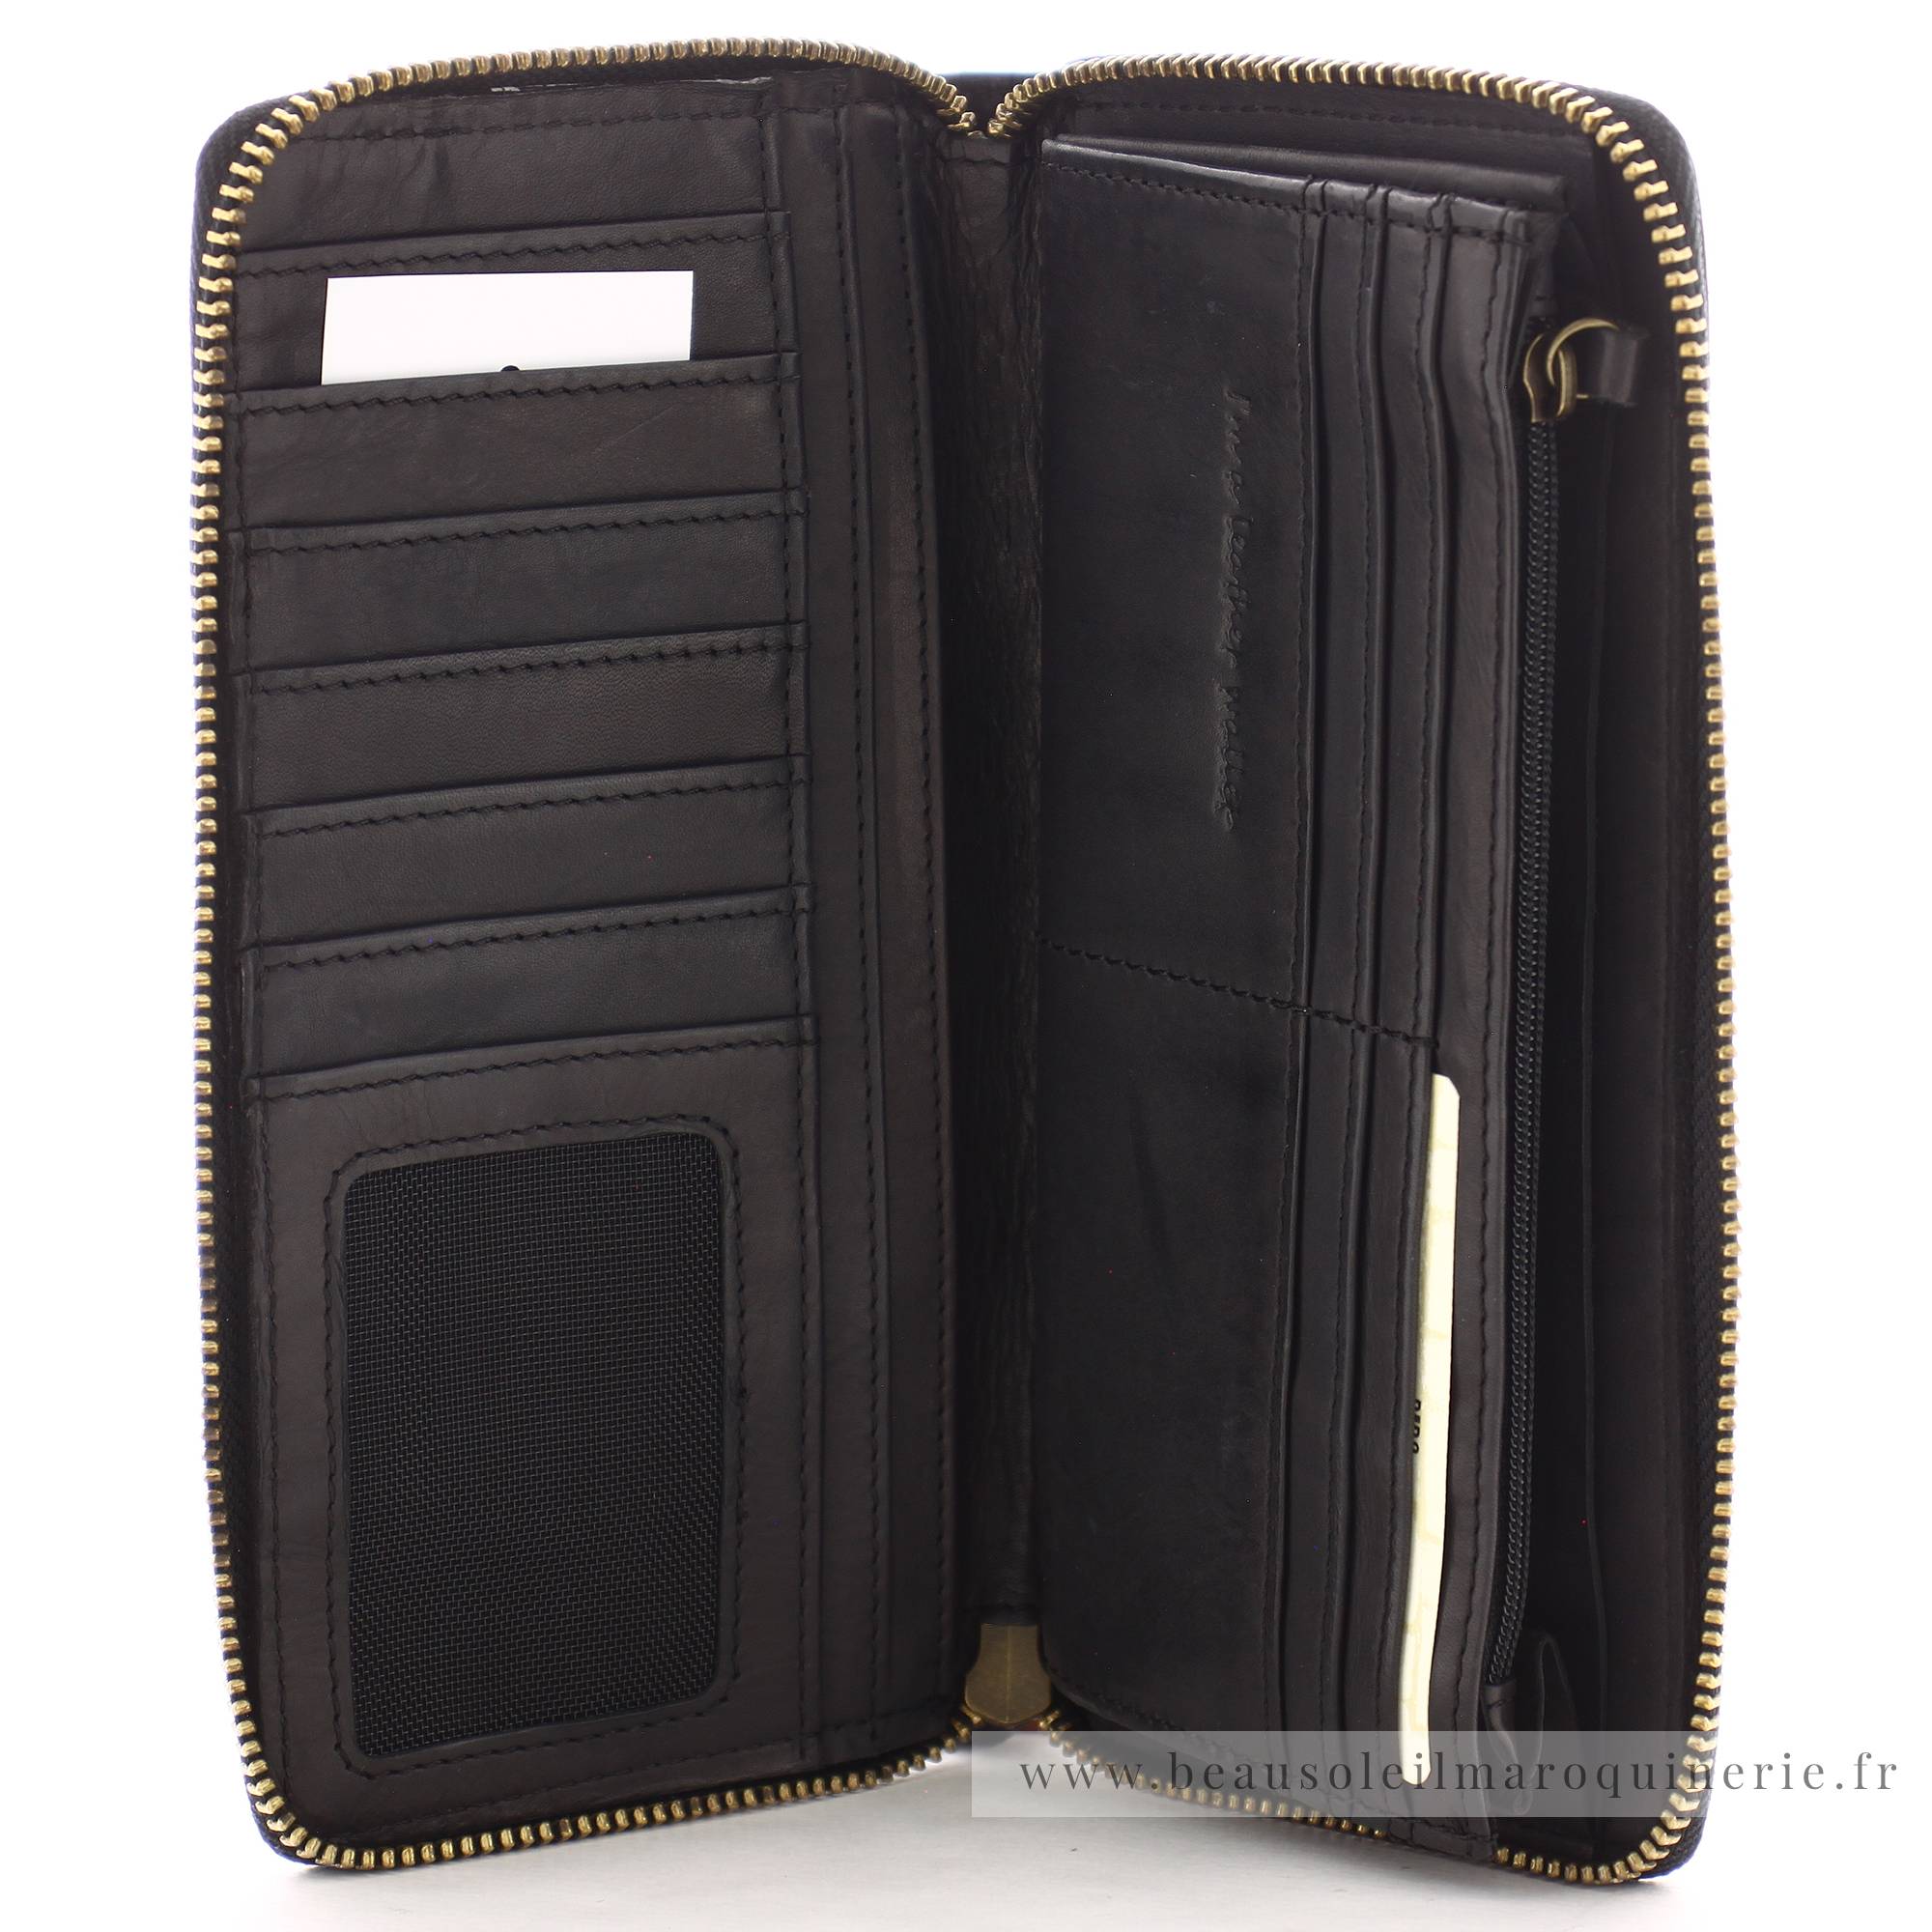 Grand portefeuille zippé Biba Boston BT10 NEGRO de couleur noir, vue intérieur